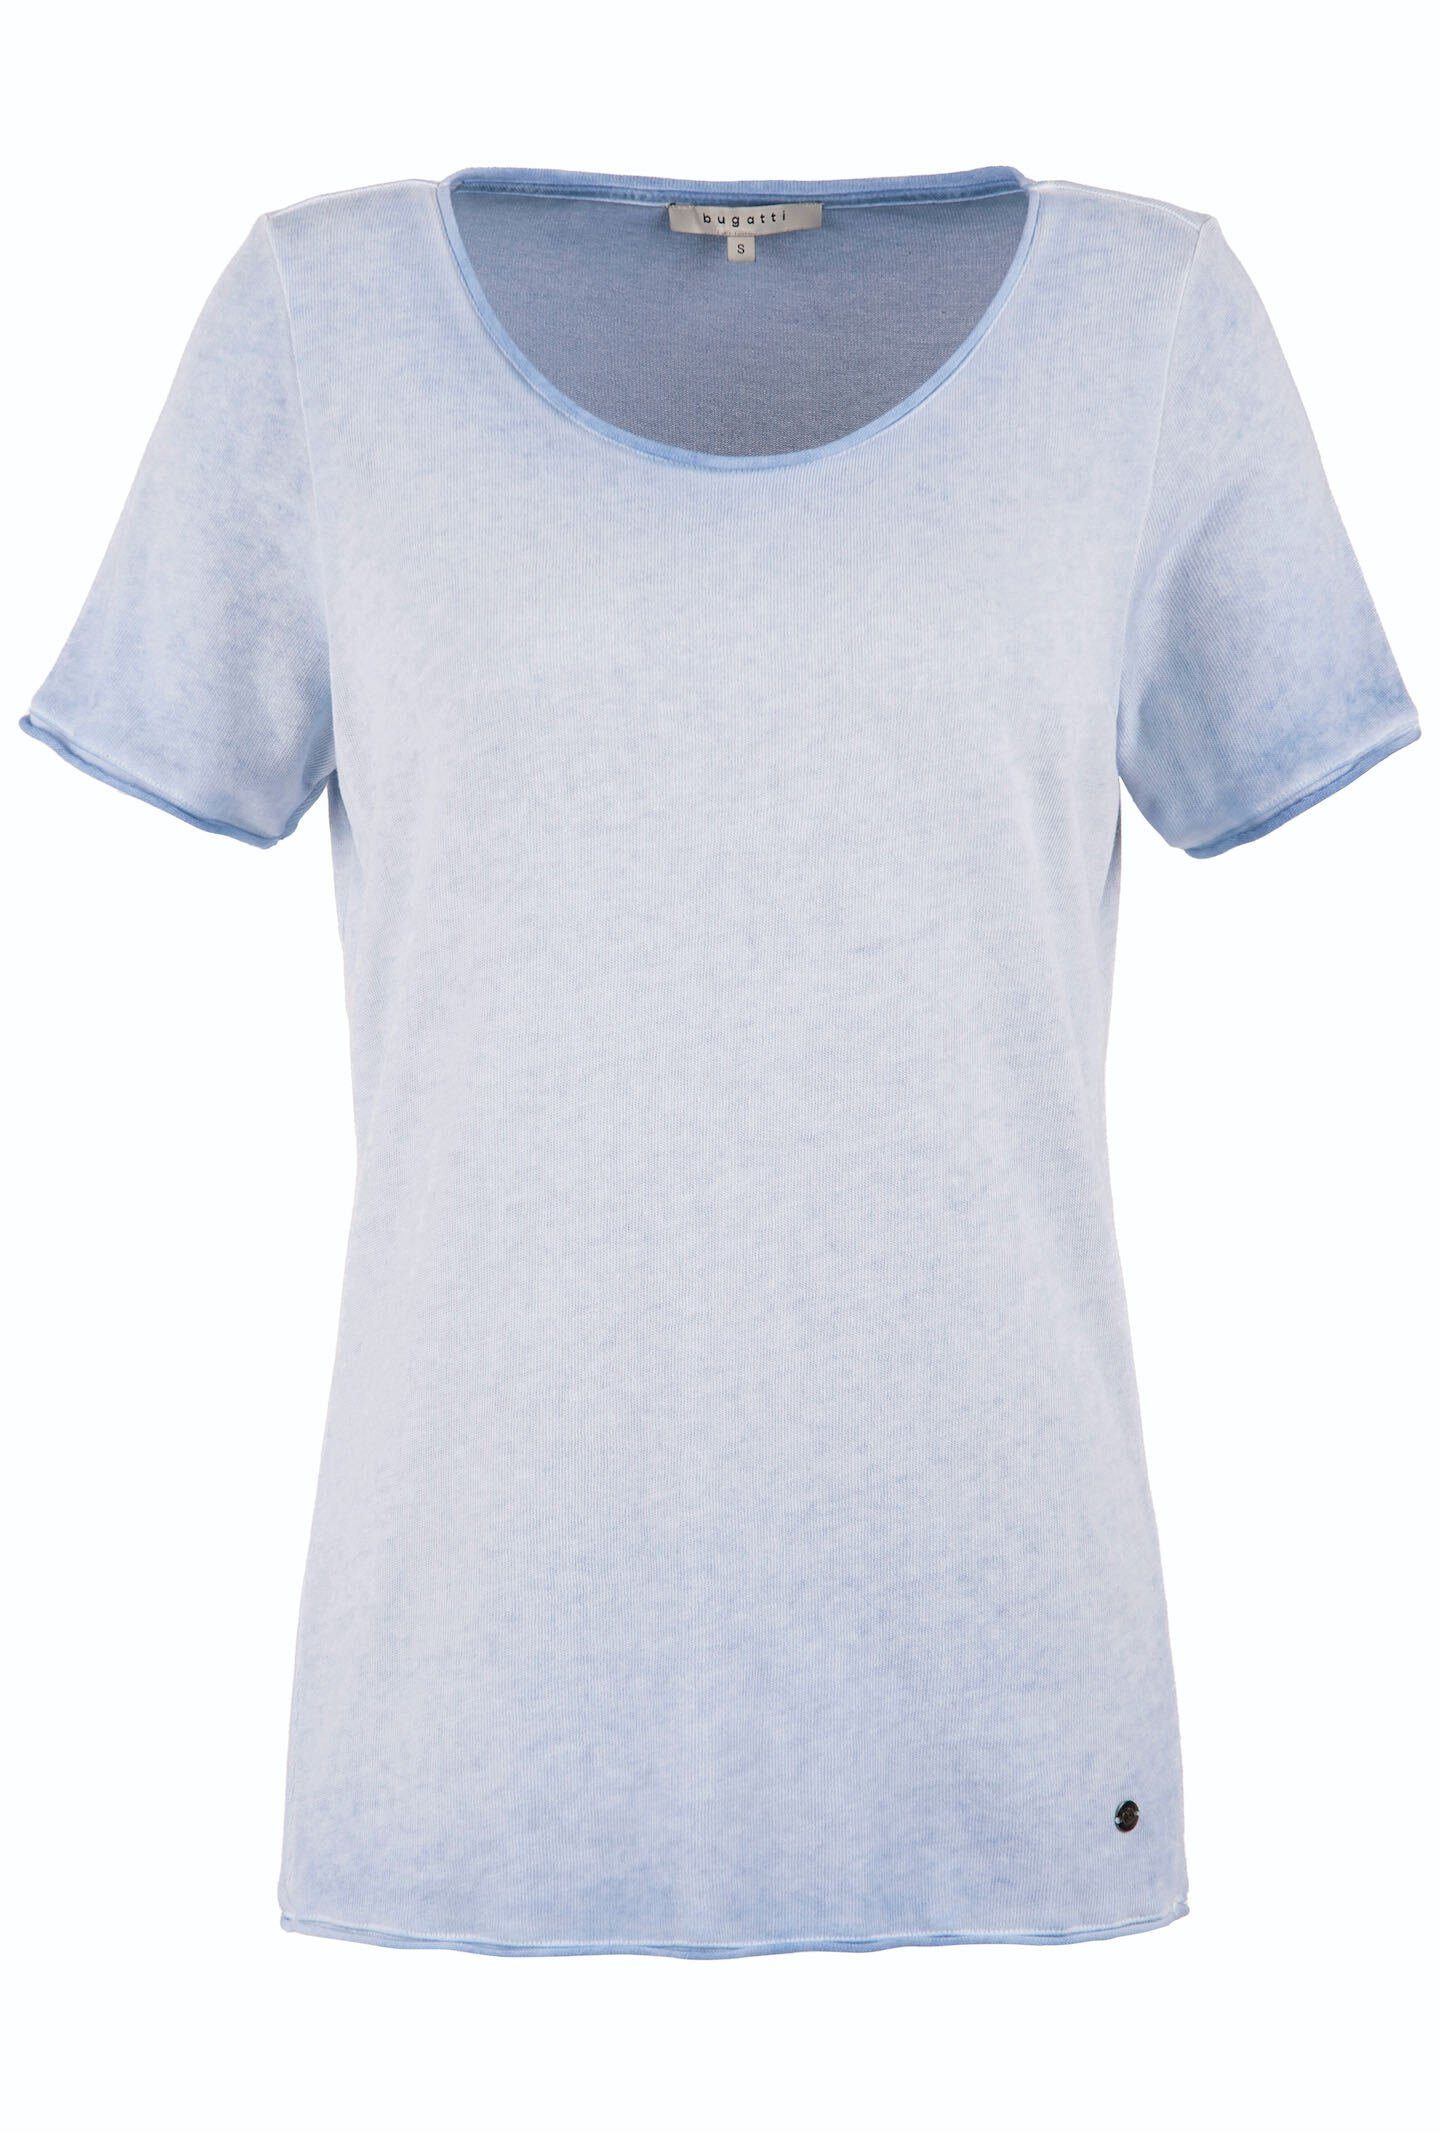 bugatti Rundhalsshirt mit Optik verwaschener hellblau leicht